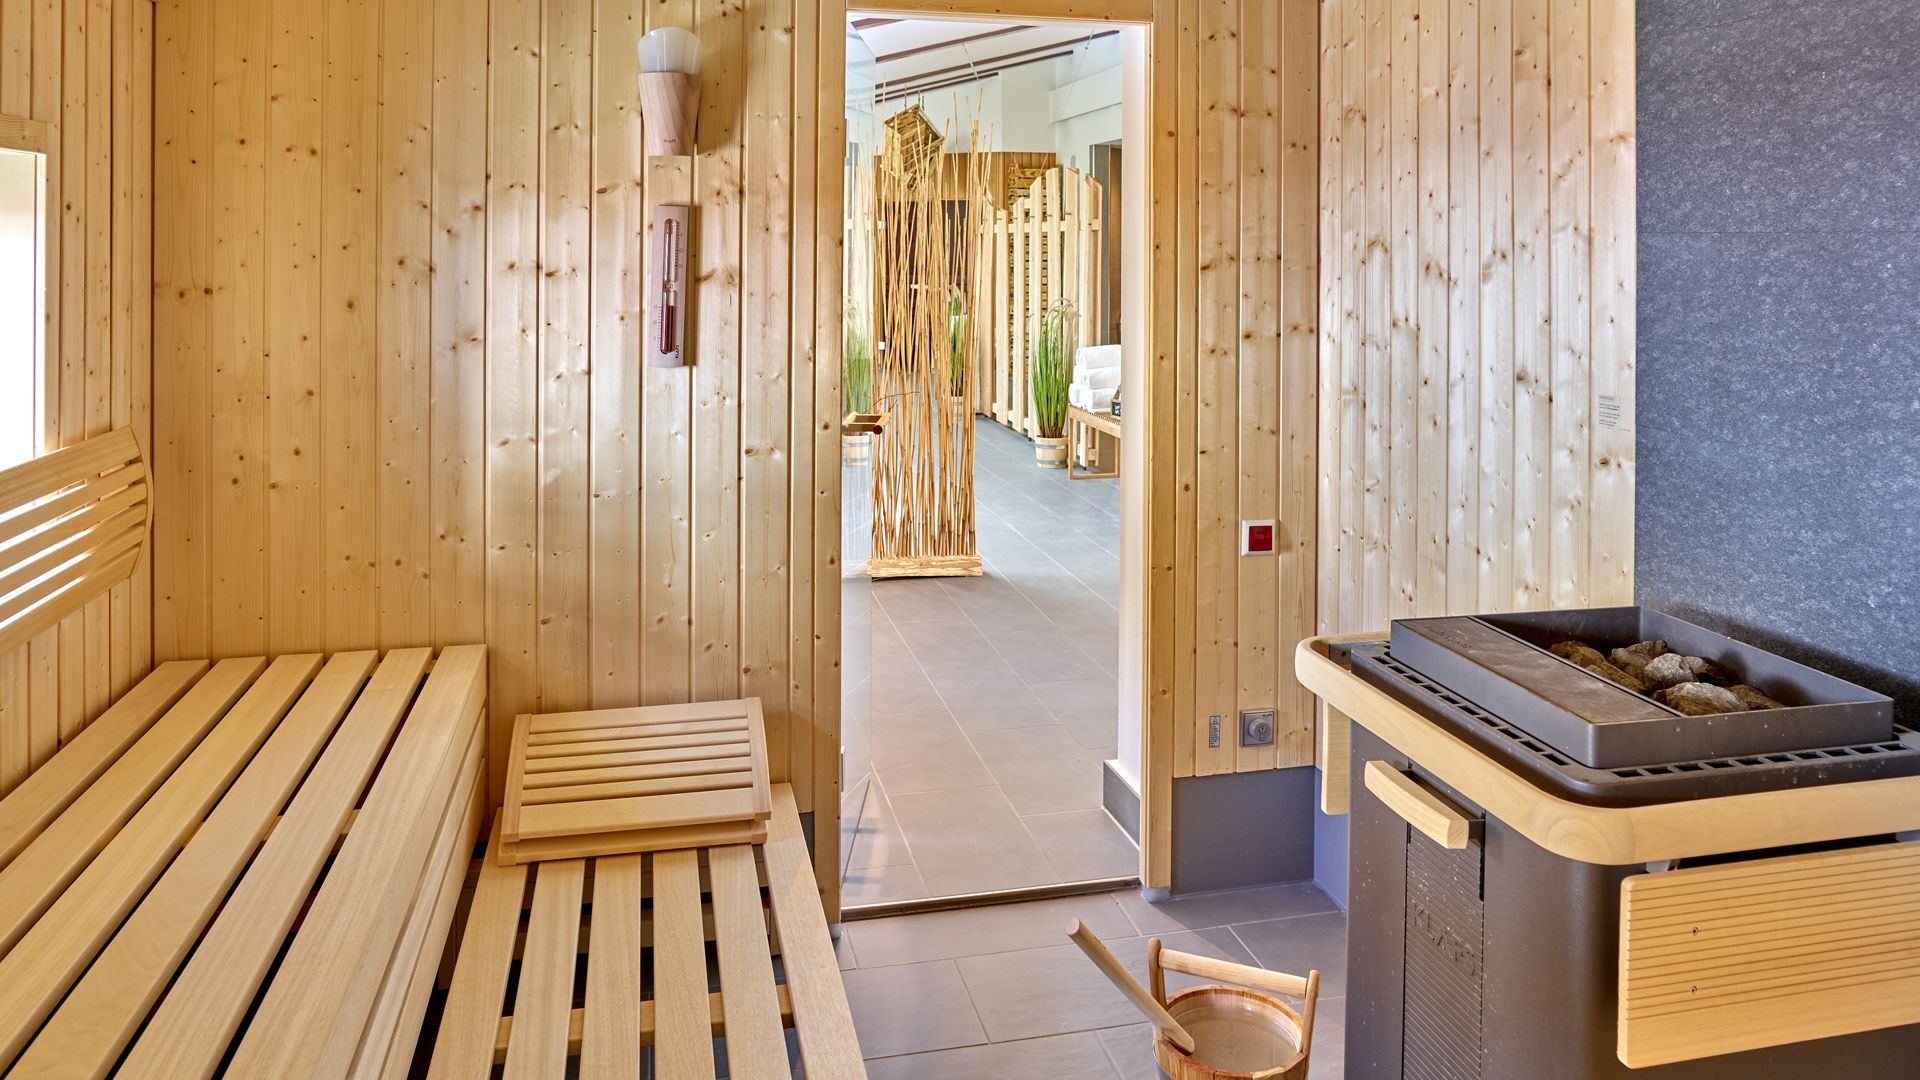 Entspannung pur nach dem Saunagang, luftige Bambuselemente unterteilen den Raum dezent.